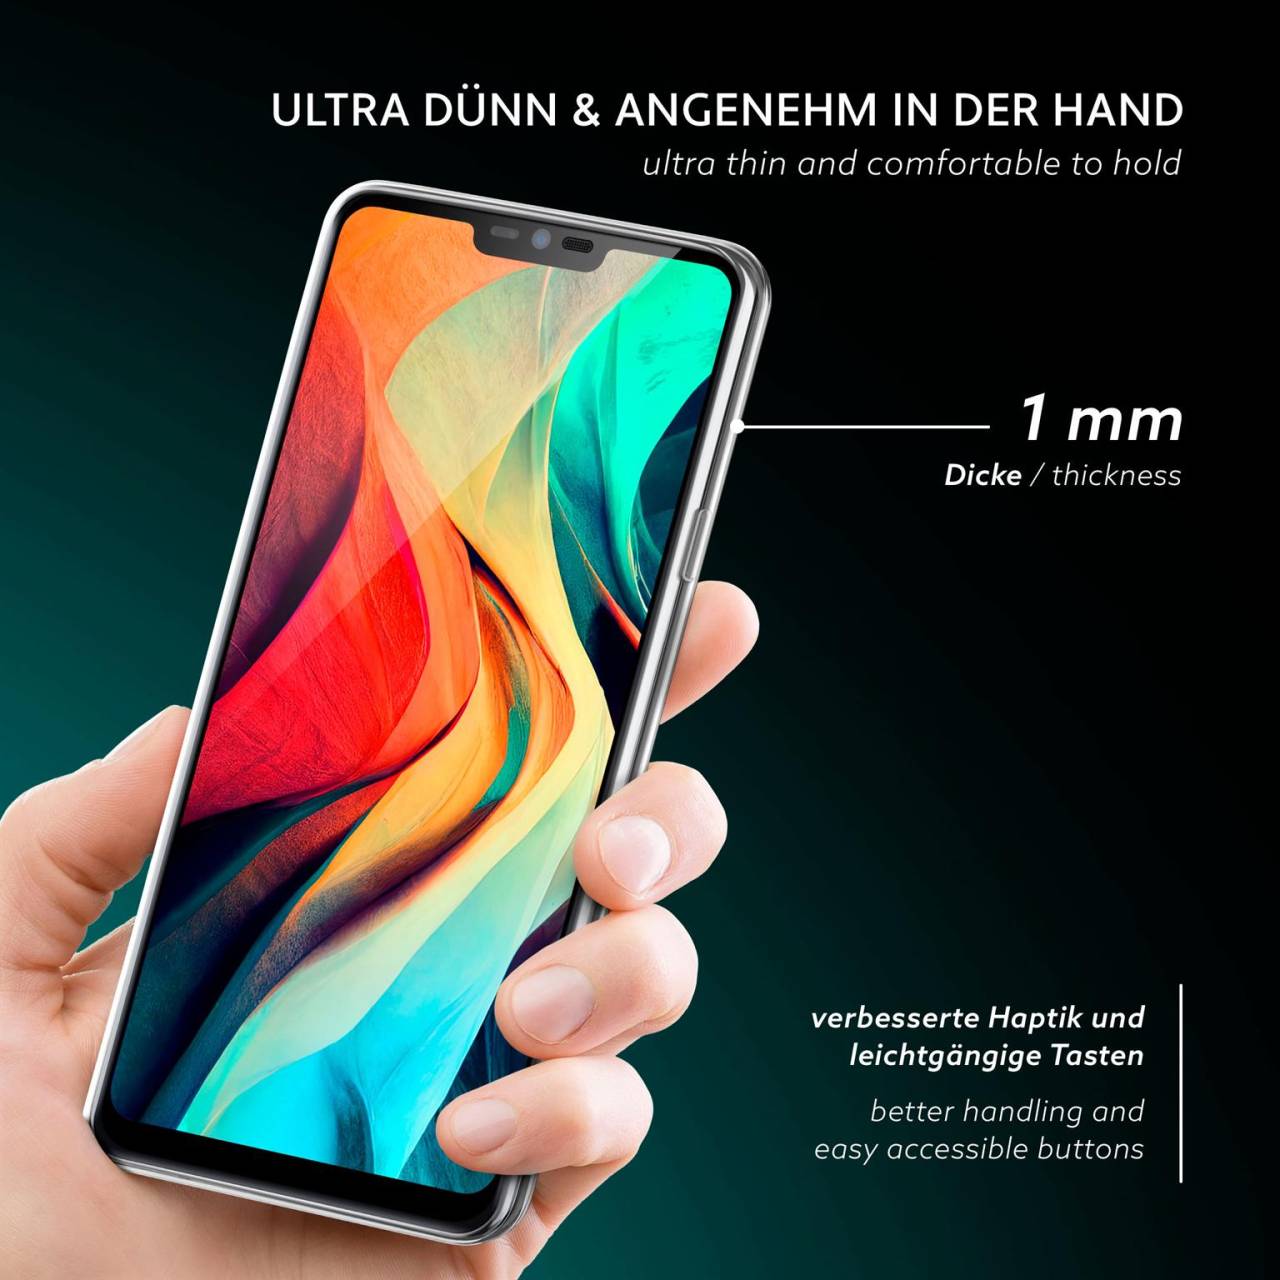 moex Aero Case für LG G7 Fit – Durchsichtige Hülle aus Silikon, Ultra Slim Handyhülle